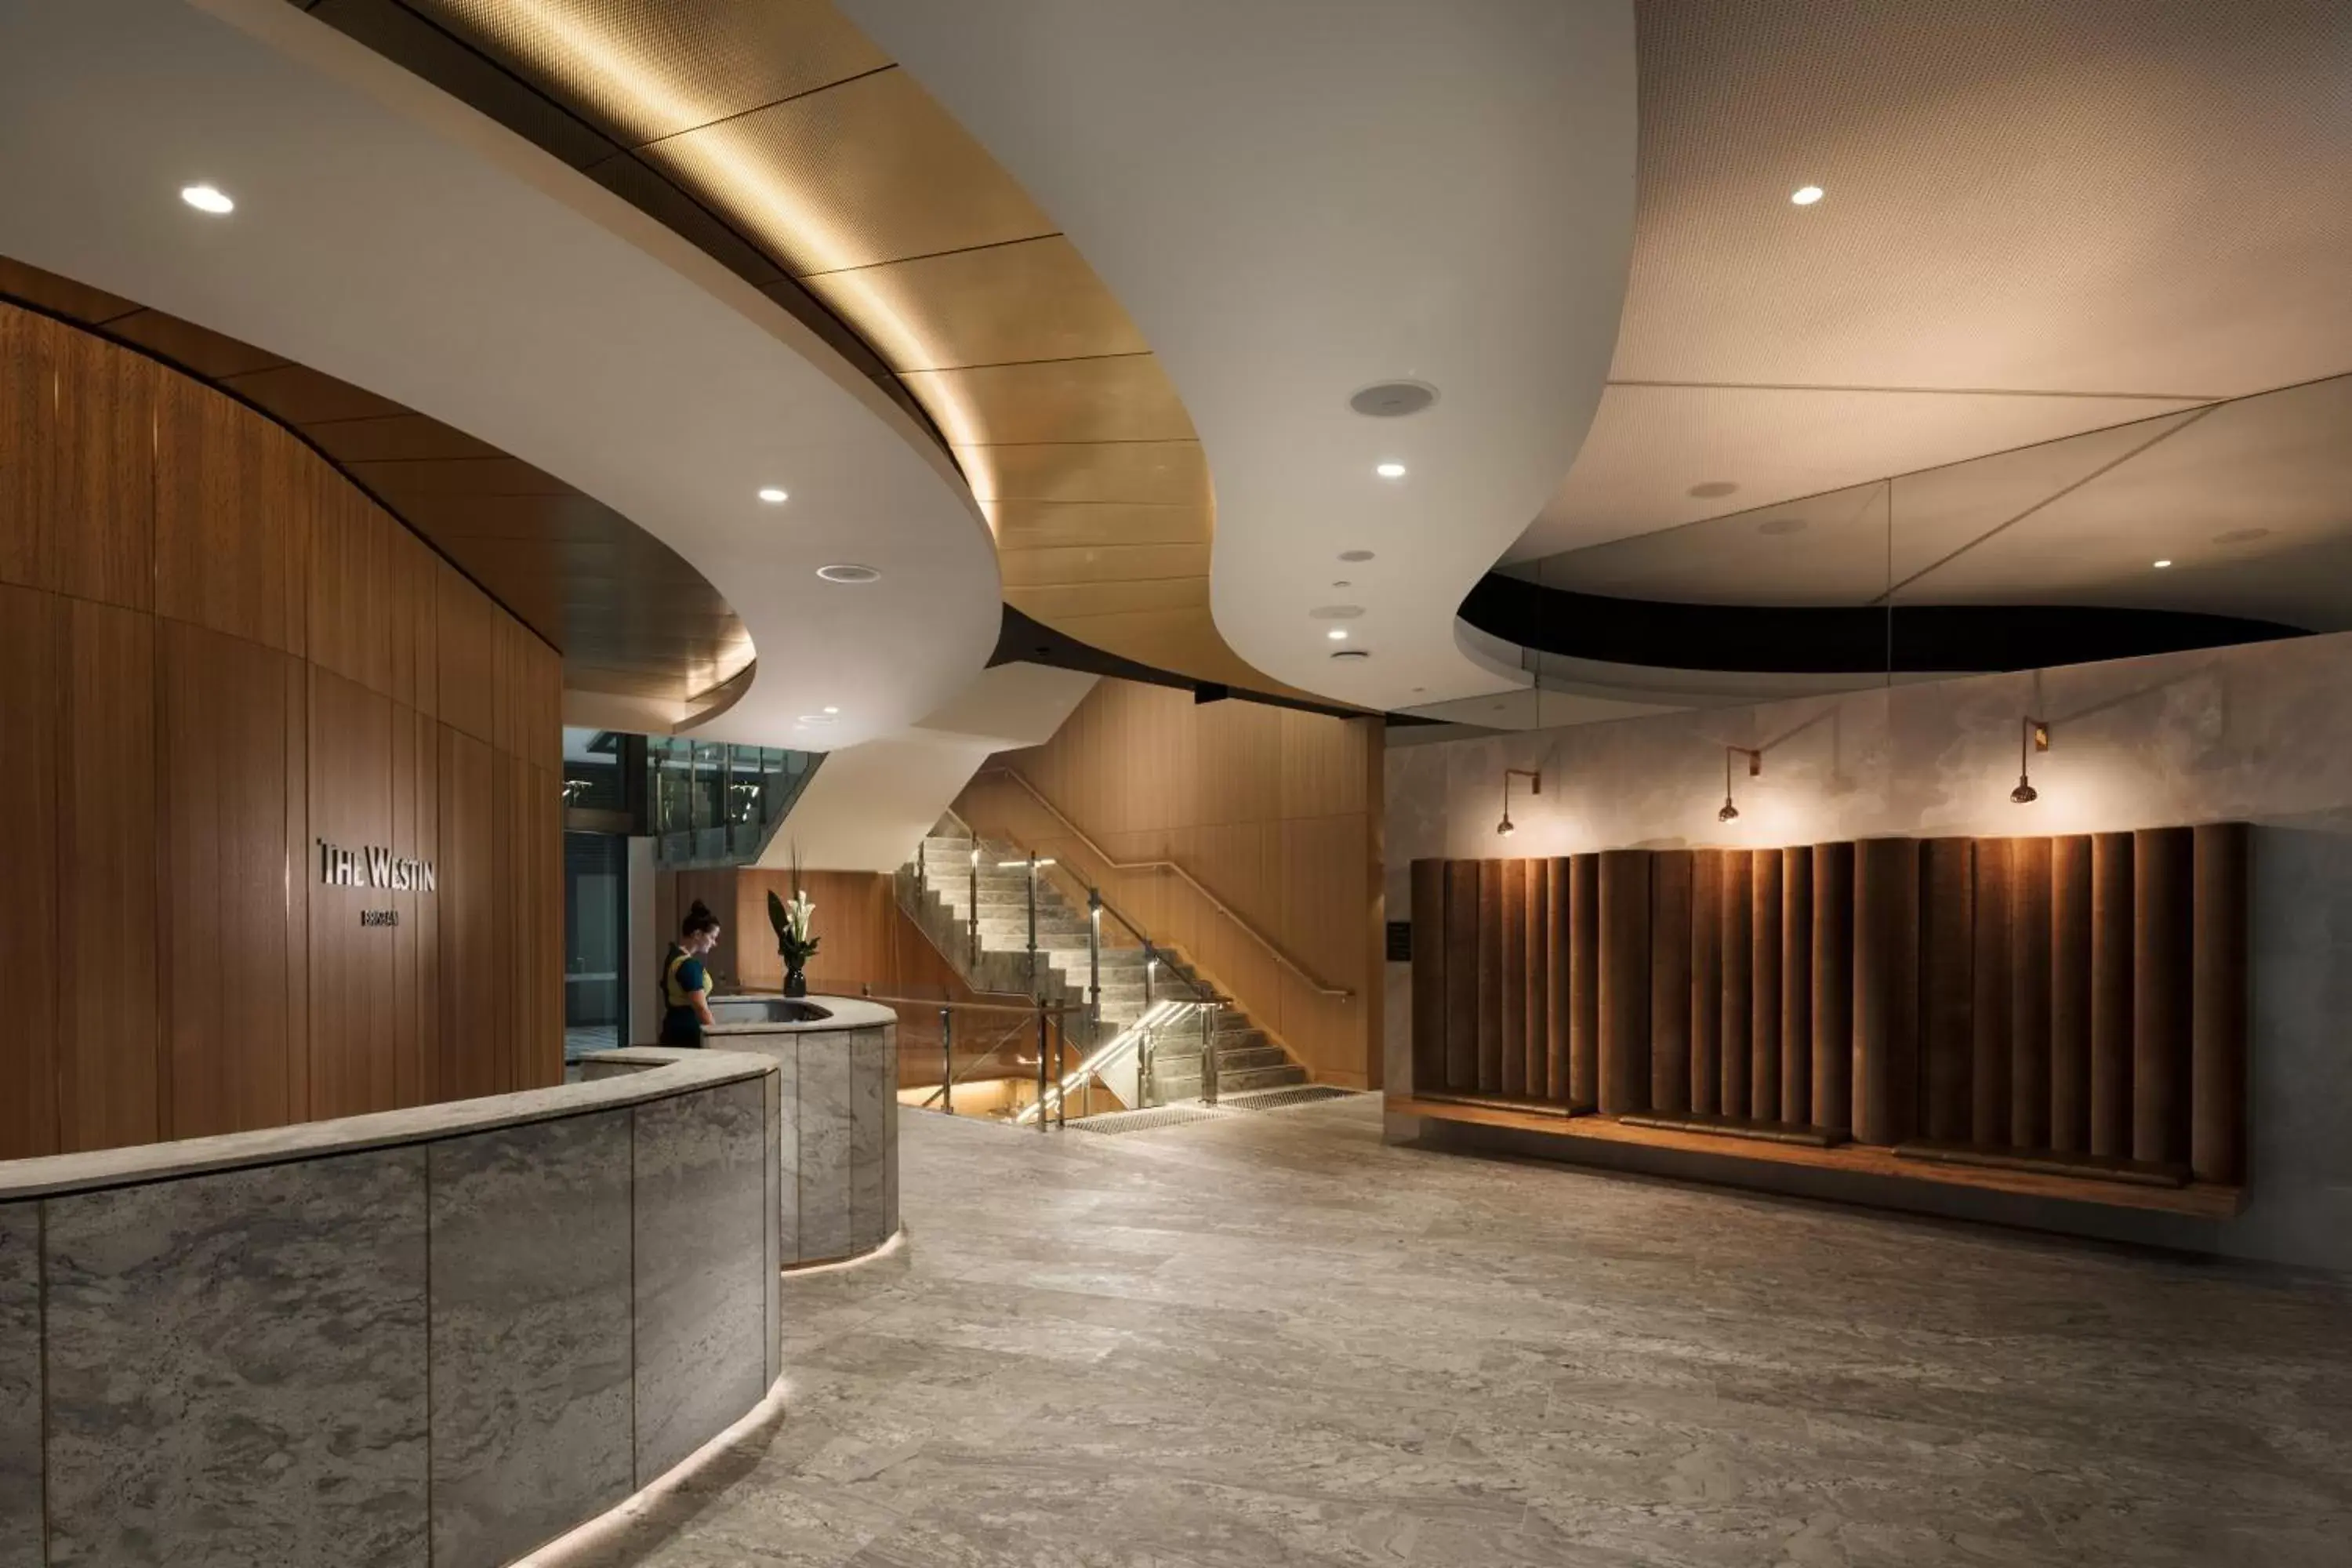 Lobby or reception, Lobby/Reception in The Westin Brisbane